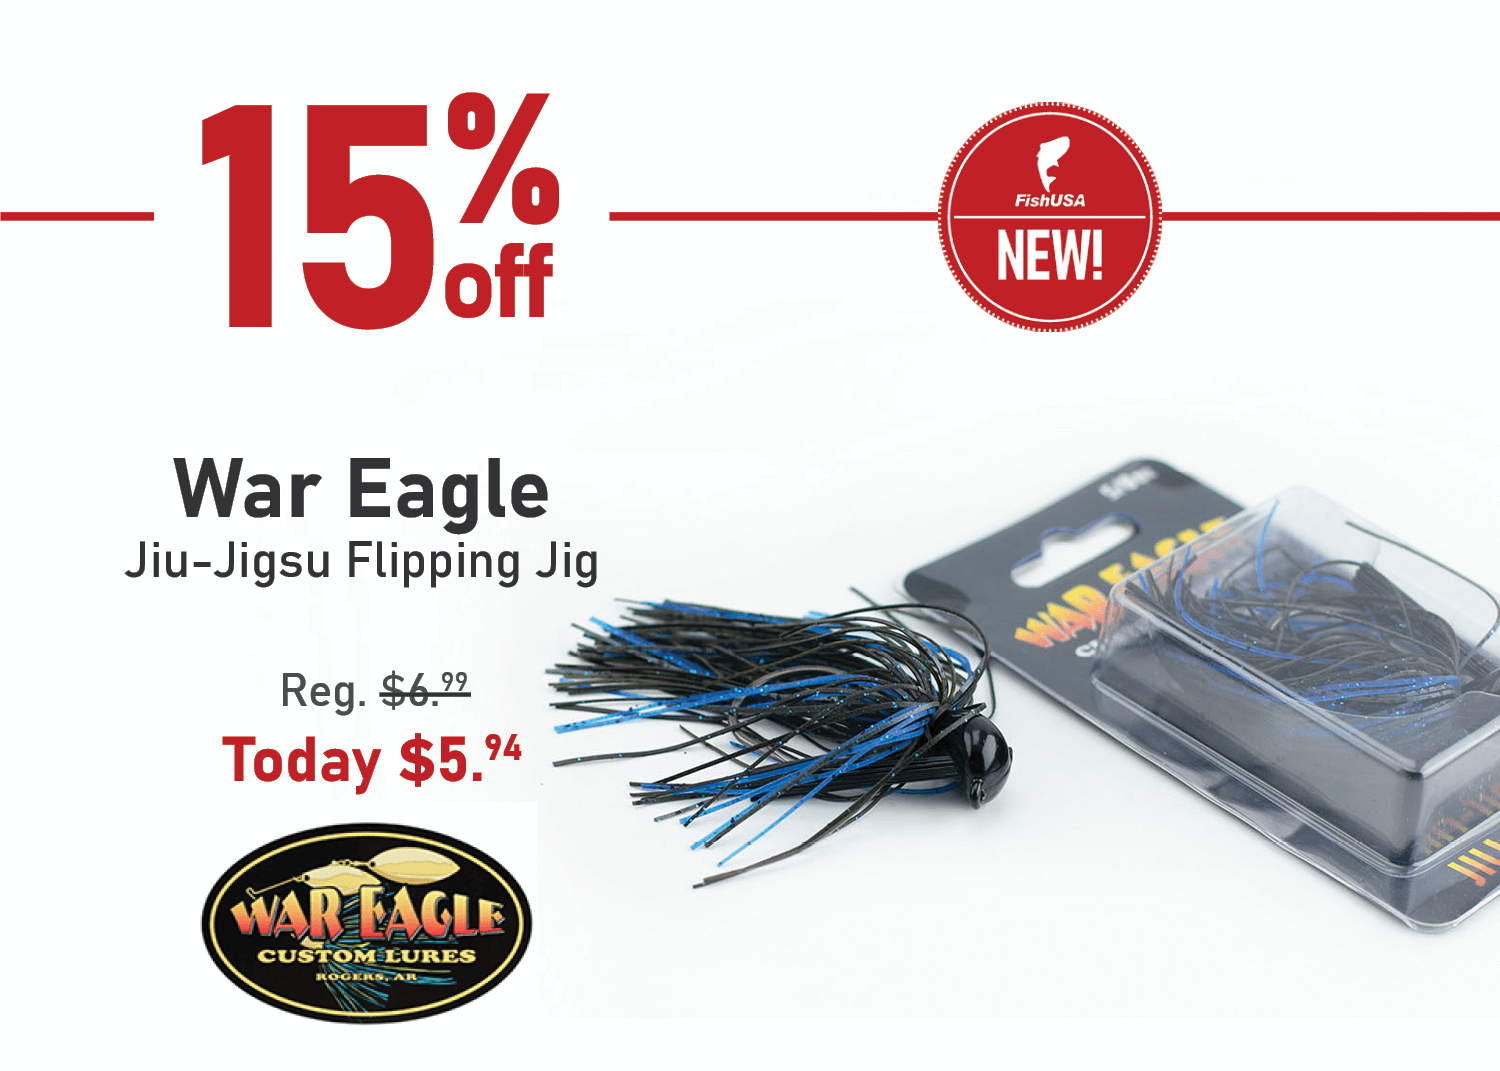 Save 15% on War Eagle Jiu-Jigsu Flipping Jigs!